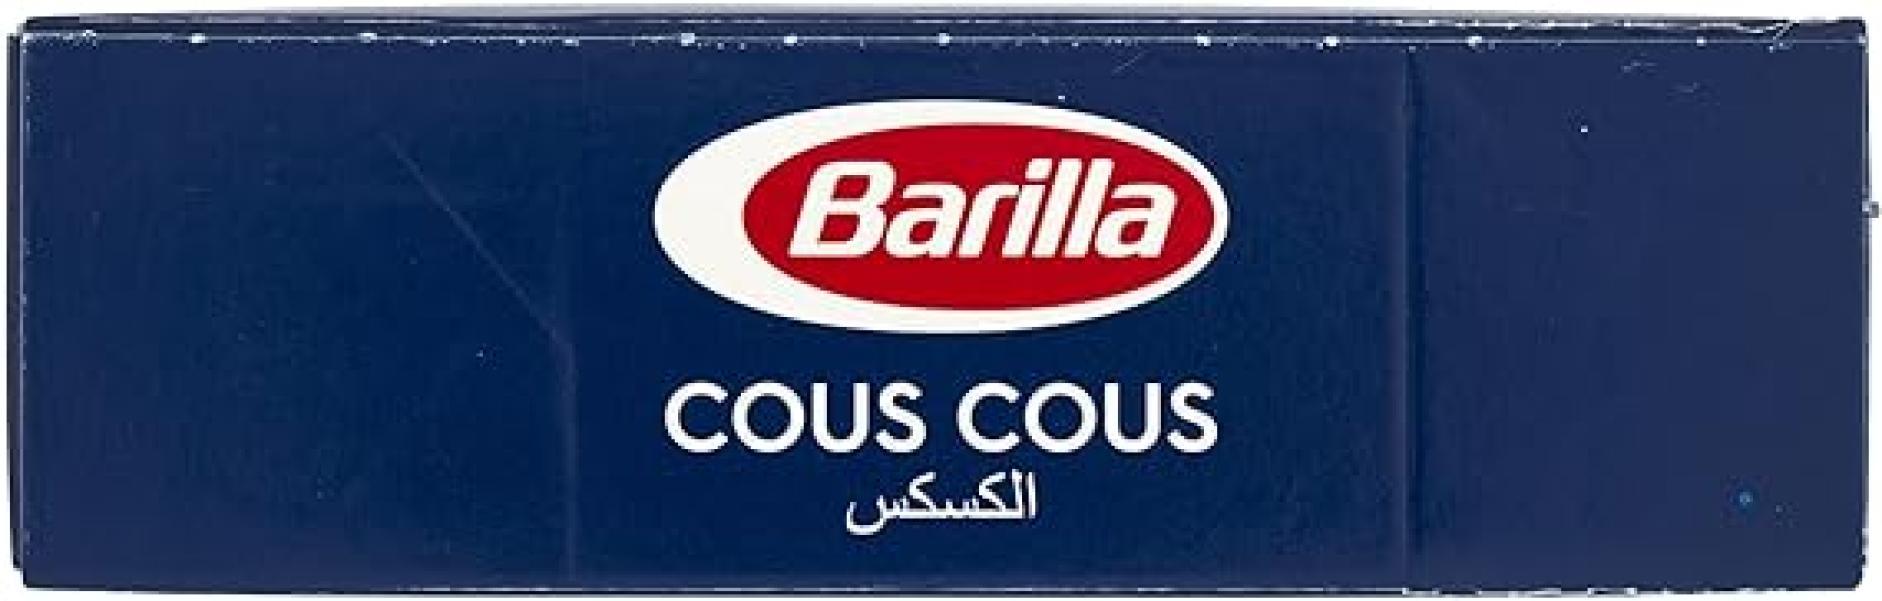 pasta-cous-cous-barilla-500gr-5